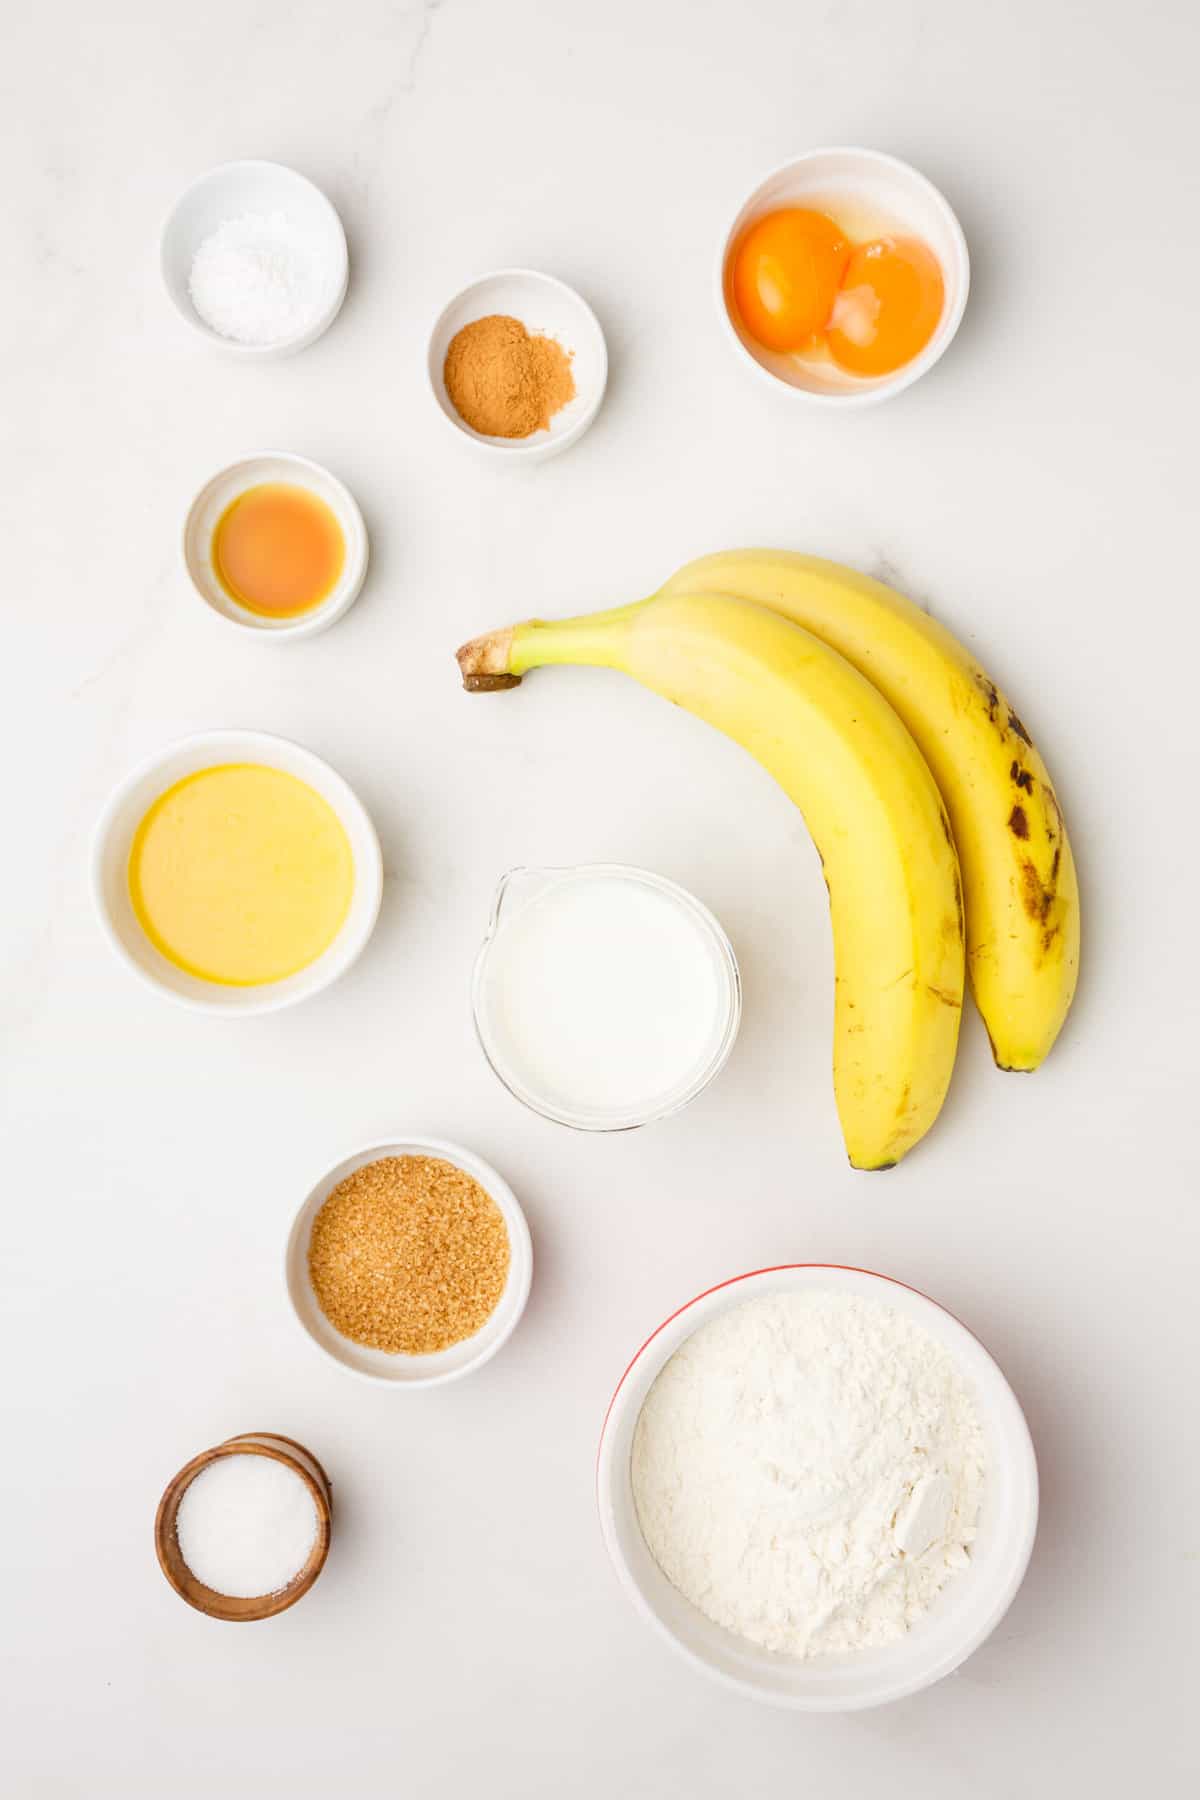 ingredients to make banana waffles